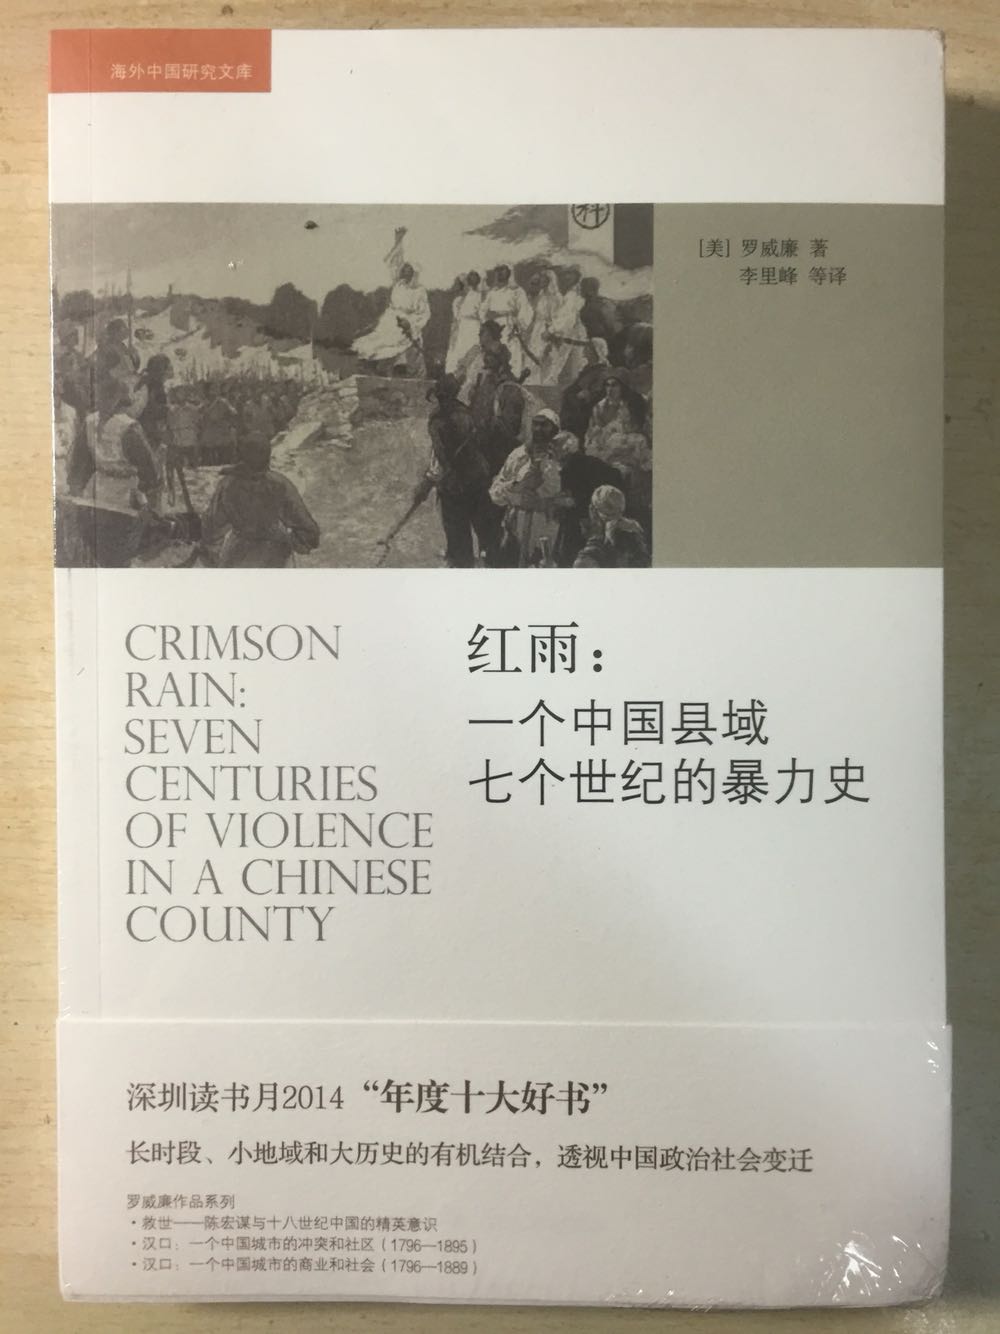 “长时段”和小地域的结合使得这本书能挑战一般著作的历史分期，从宏观上透视中国政治社会变迁，并暗示暴力超越朝代和政权的恒久。